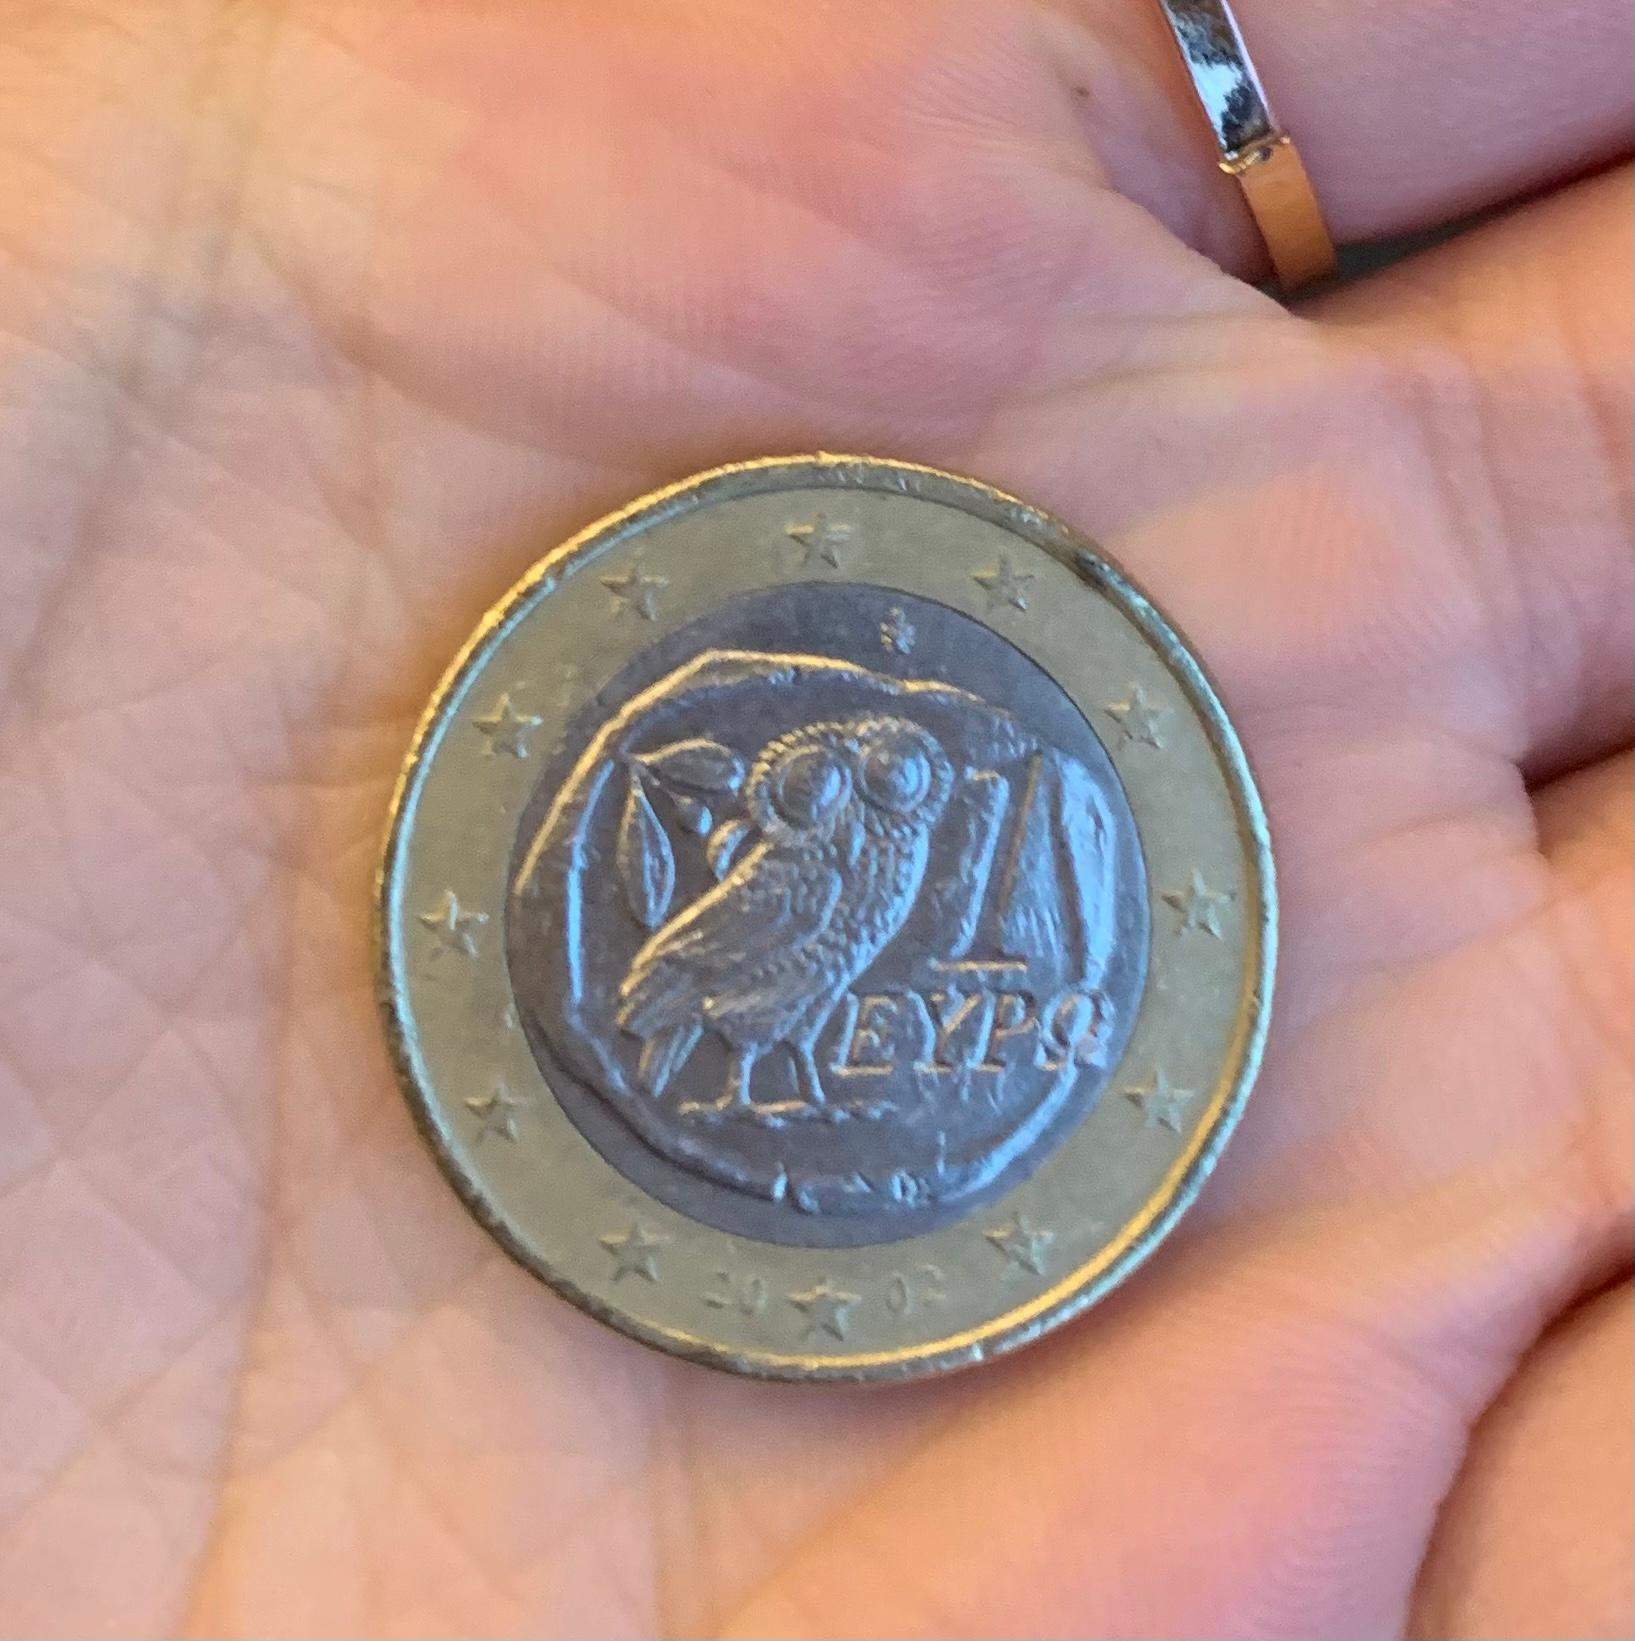 Welchen Sammlerwert hat die 1 Euro Münze mit der Eule mit dem Buchstaben S  im Stern? (Geld, Münzen, Sammler)